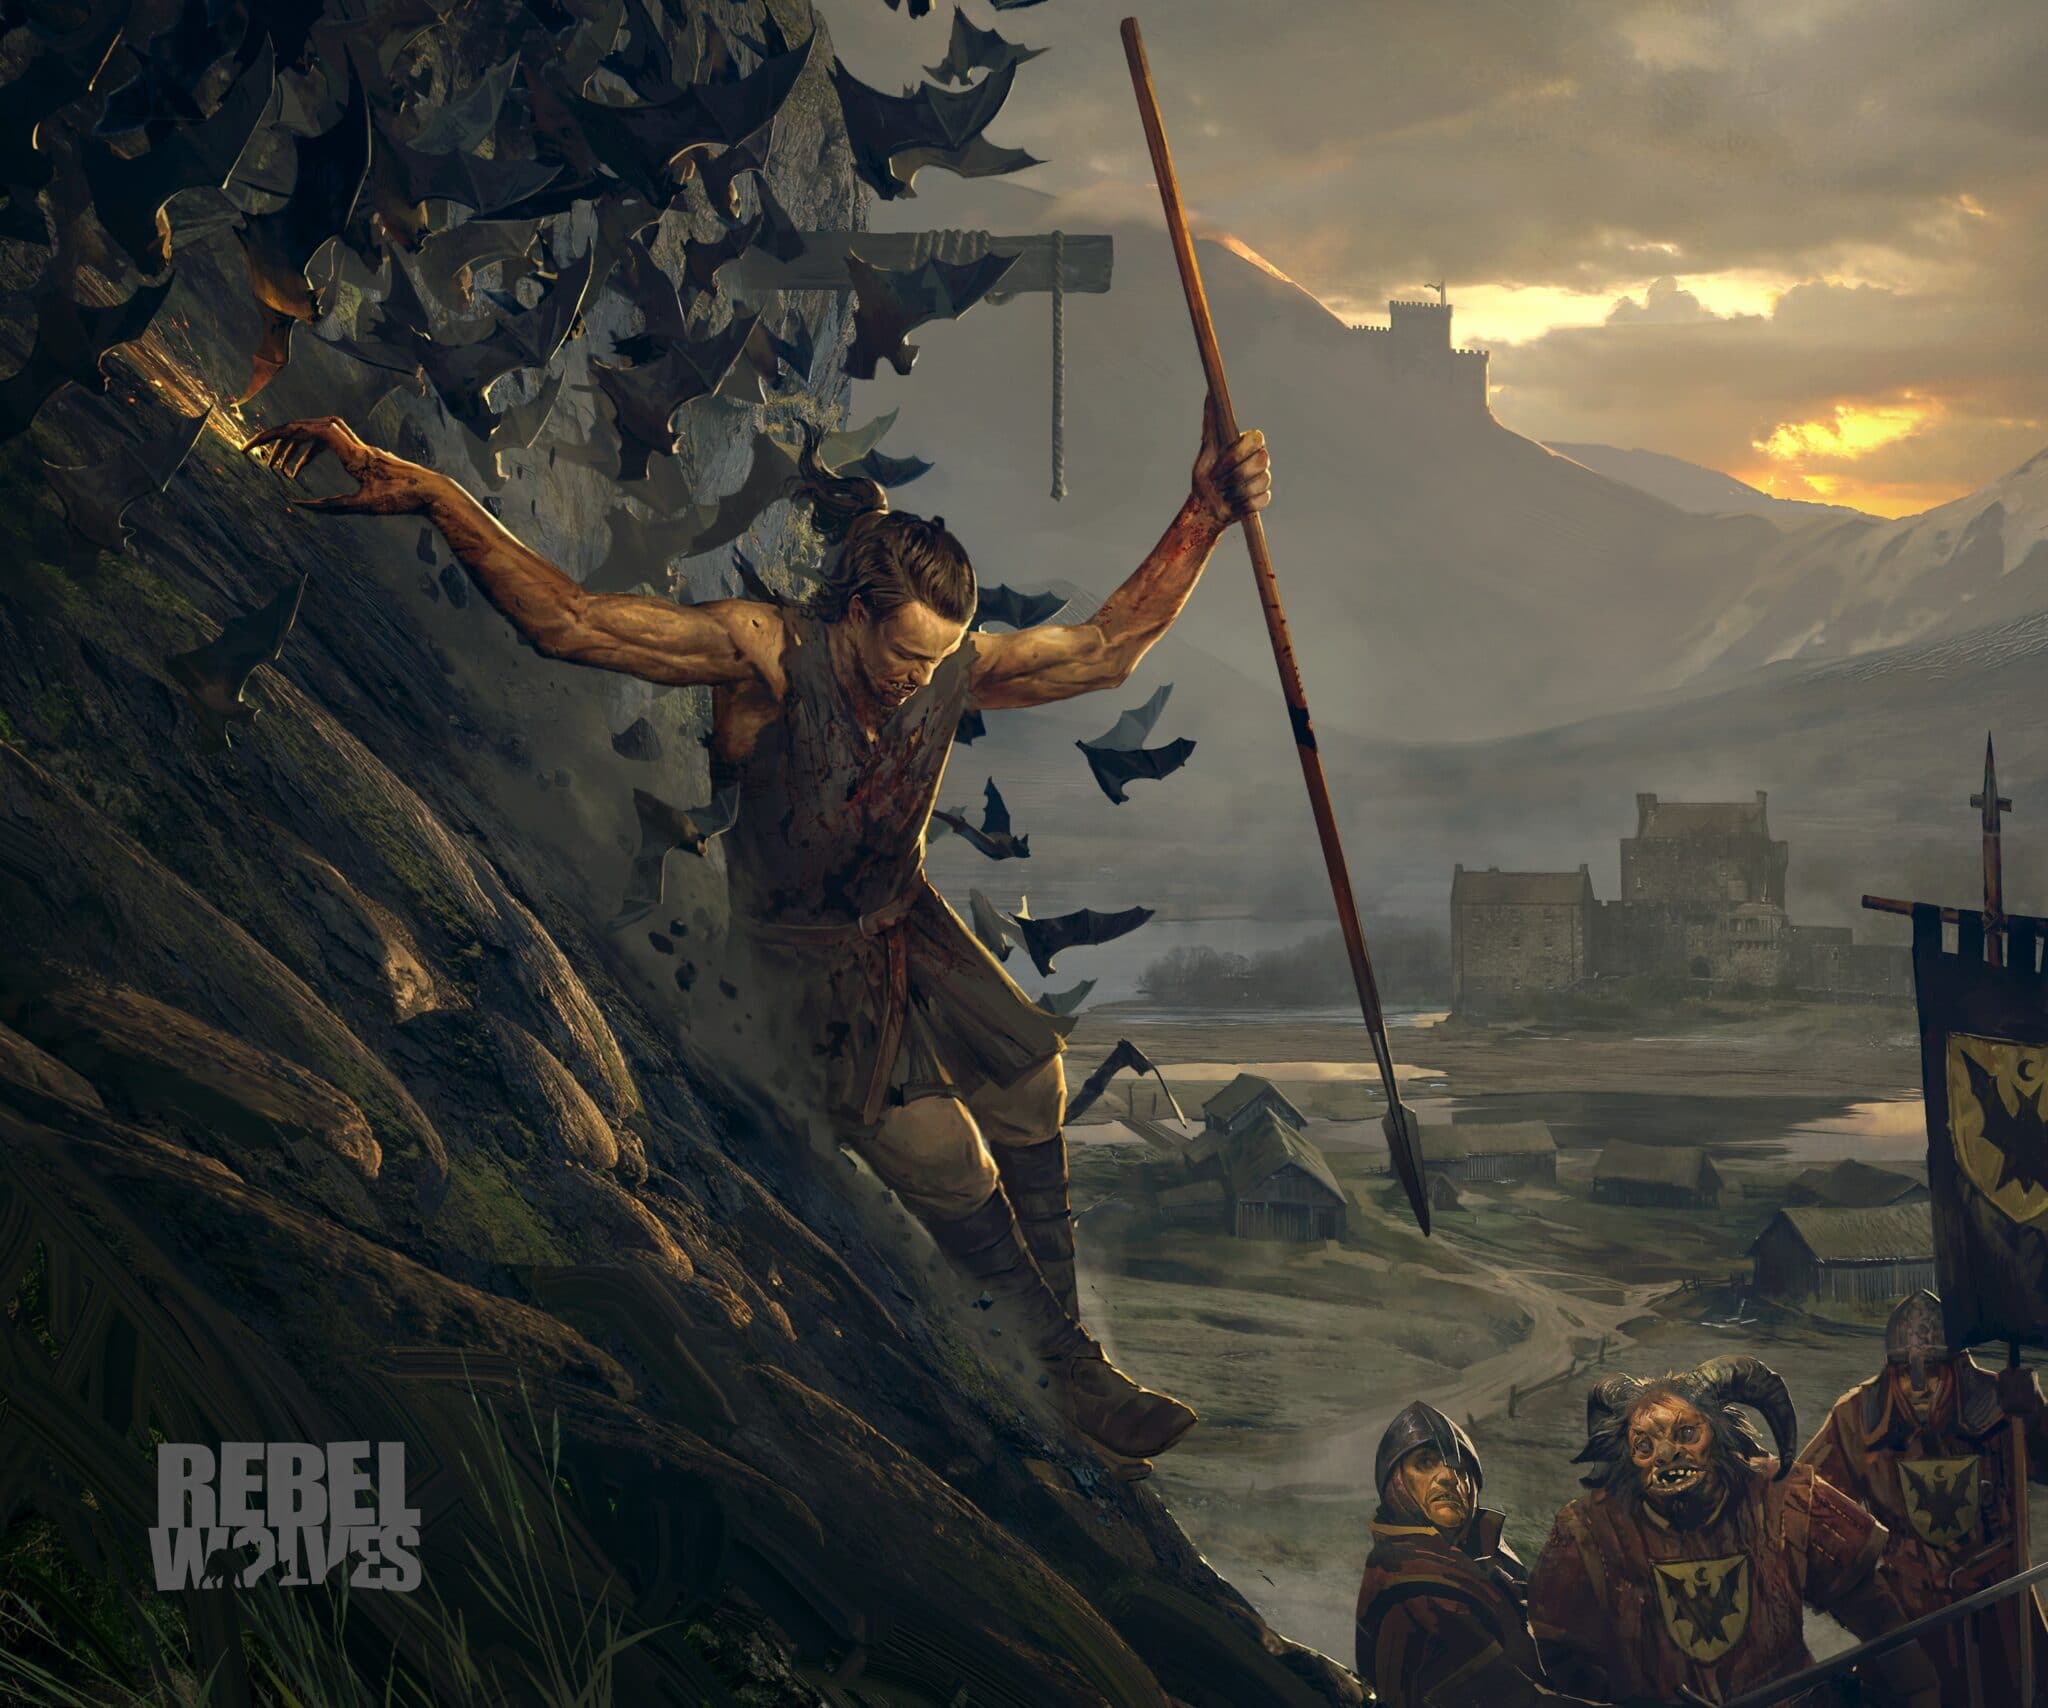 Finora, tutto quello che possiamo vedere è questo concept art per il nuovo gioco. Accenna a un'ambientazione fantasy oscura e alla guerra.